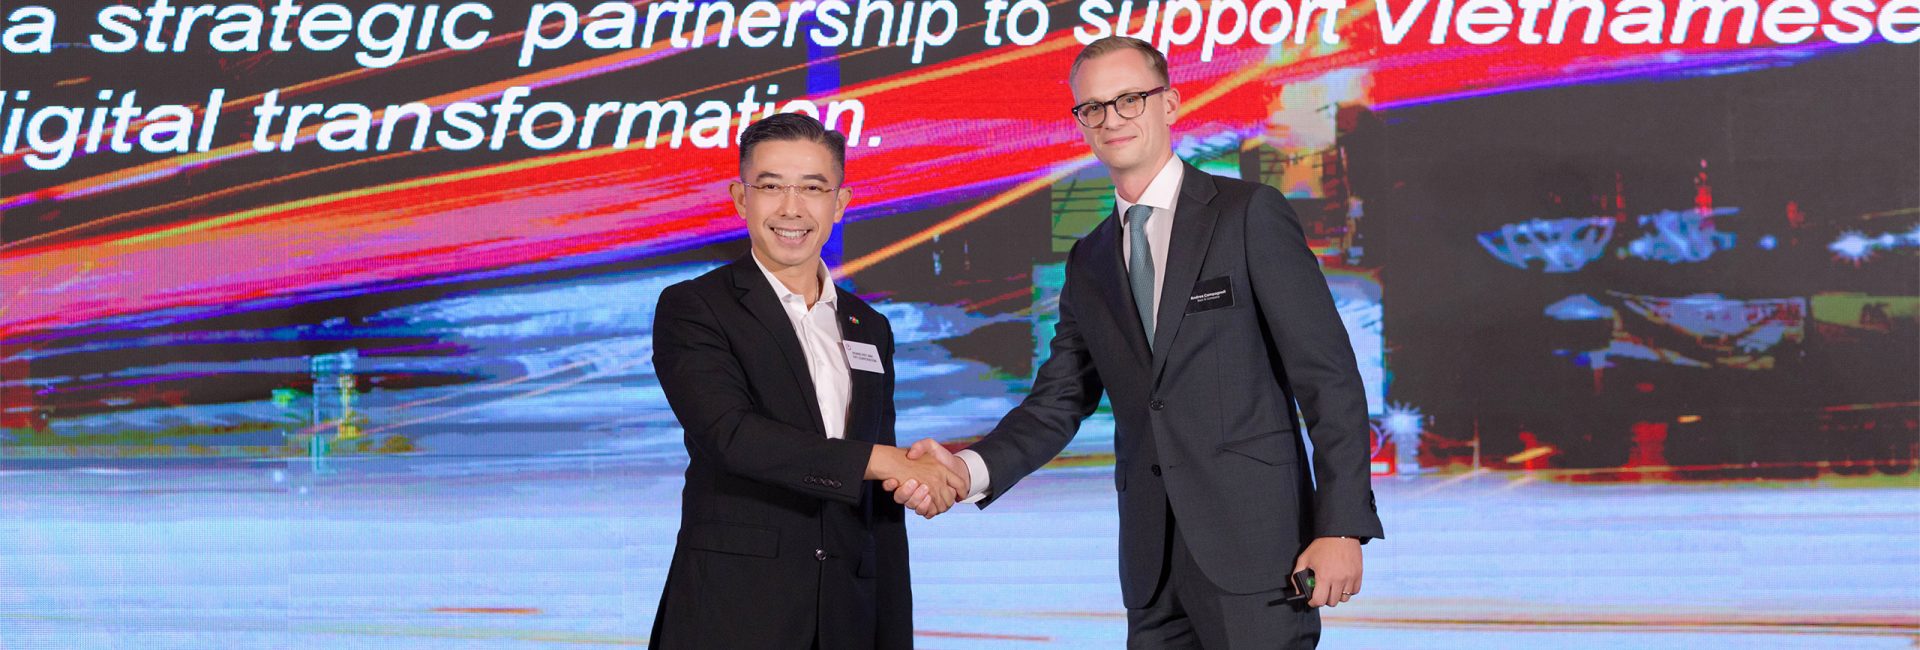 FPT Digital trở thành đối tác tư vấn chiến lược của Bain & Company tại thị trường Việt Nam